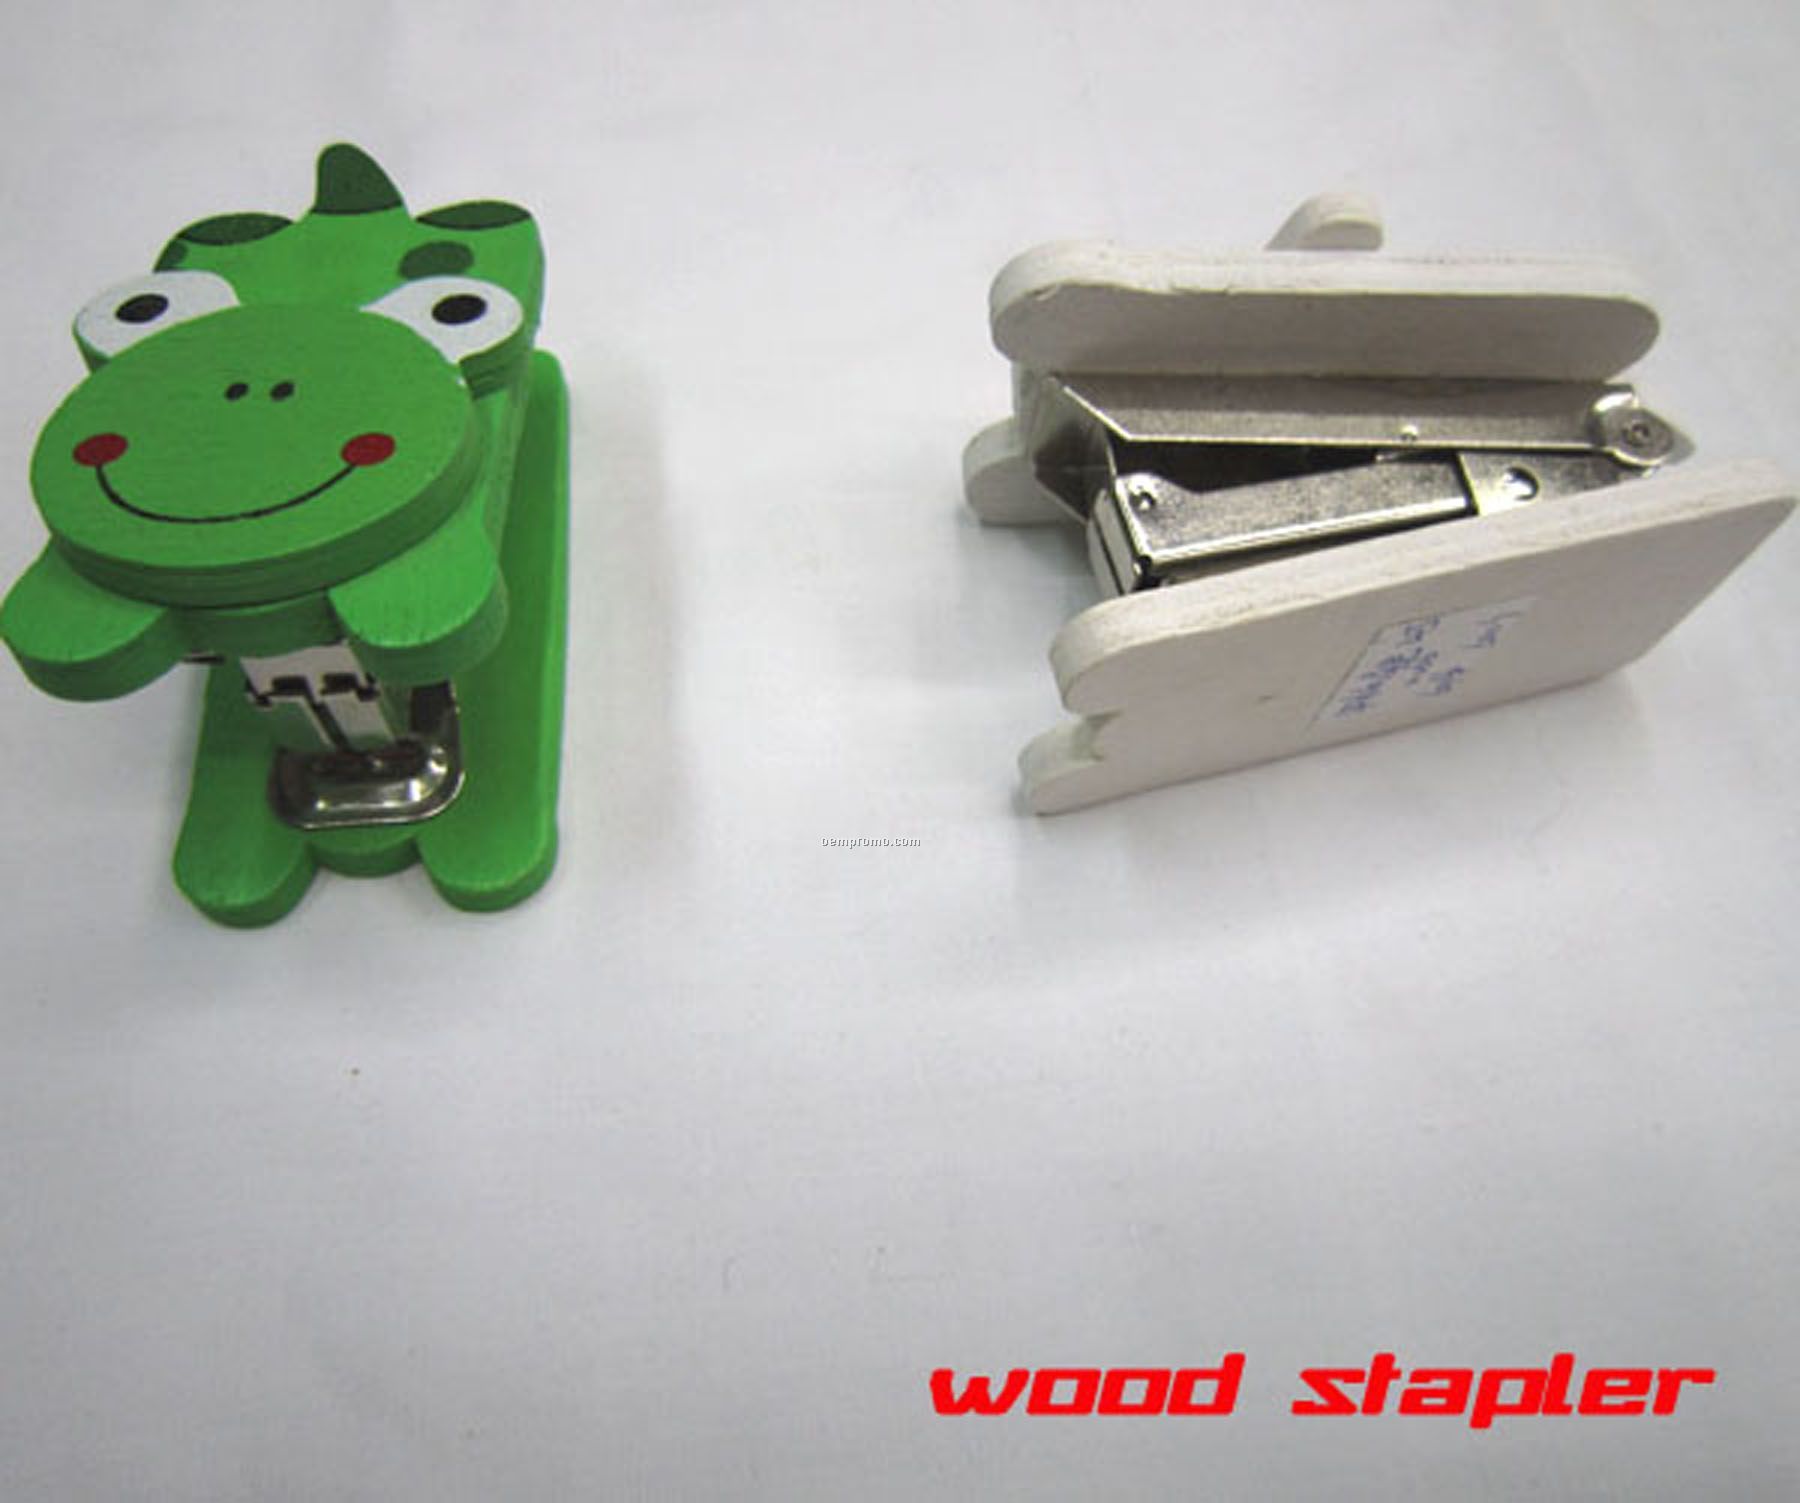 Wooden Stapler